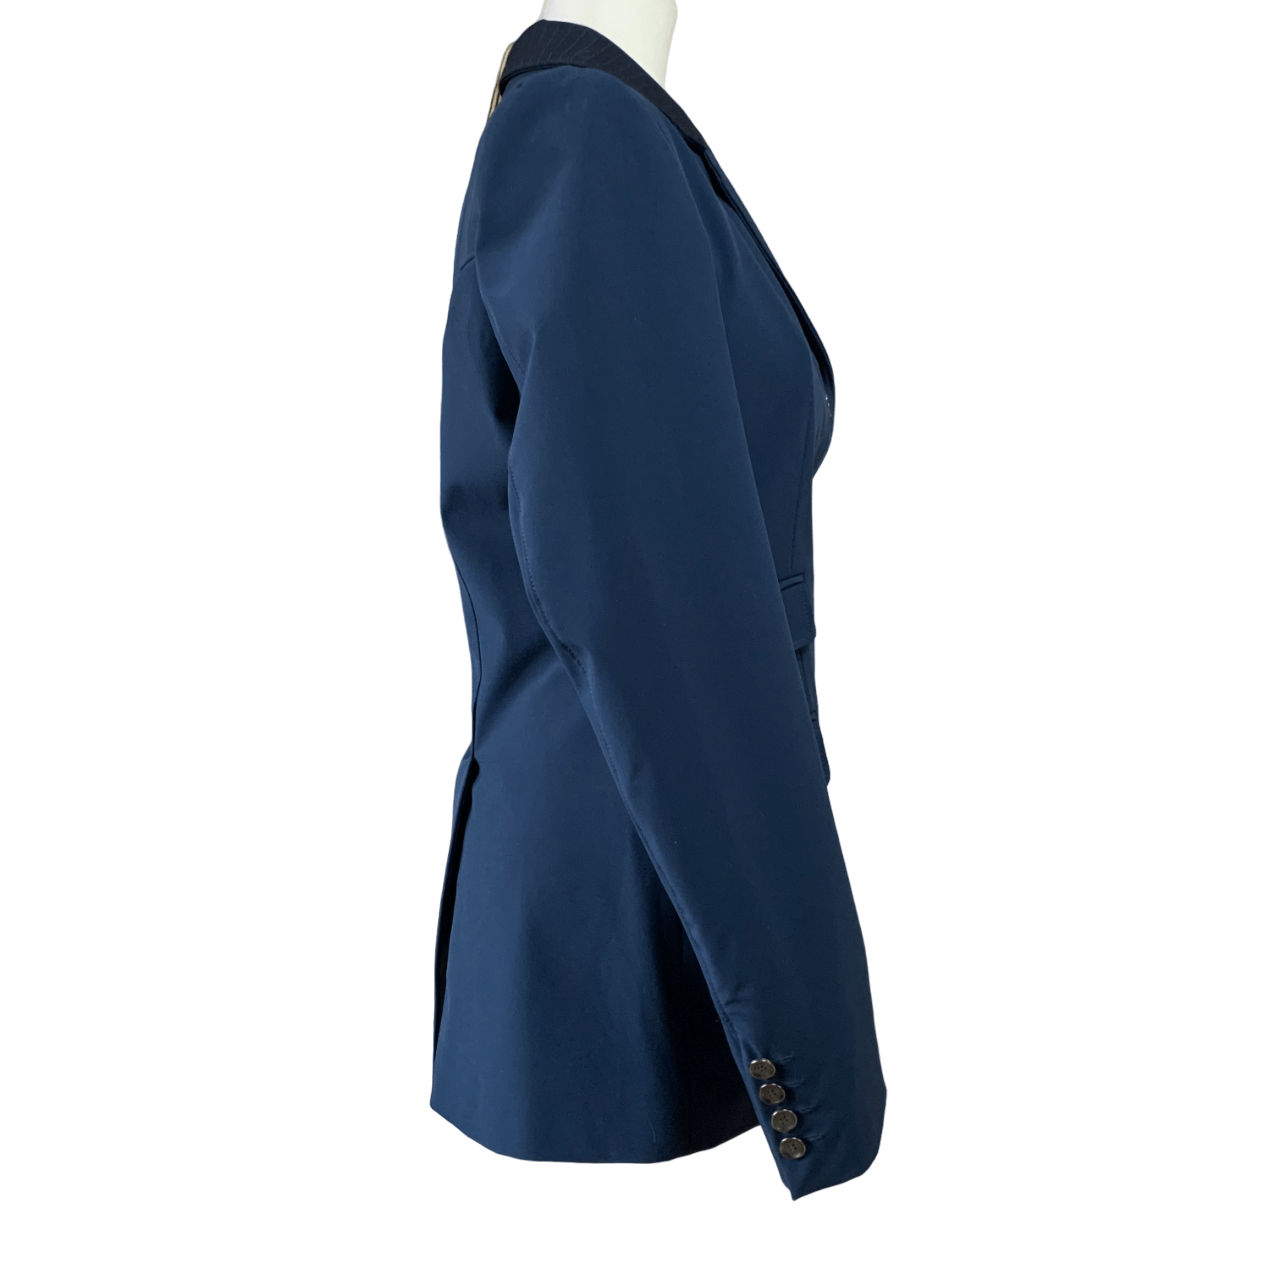 B Vertigo 'Tina' Competition Jacket in Navy - Woman's XL